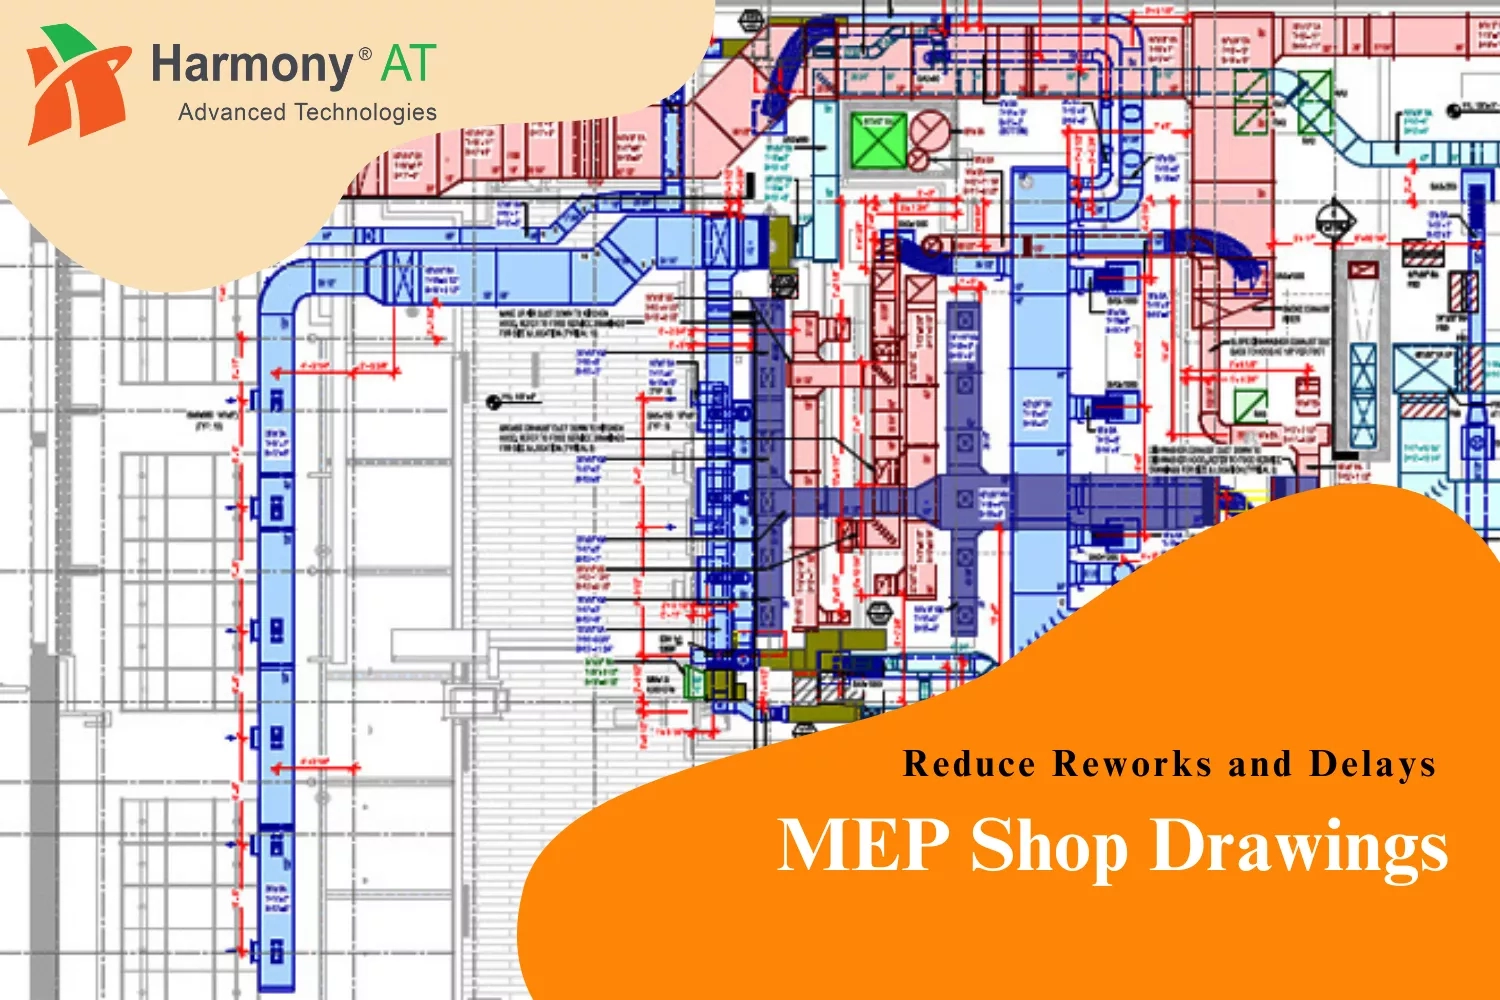 MEP shop drawings